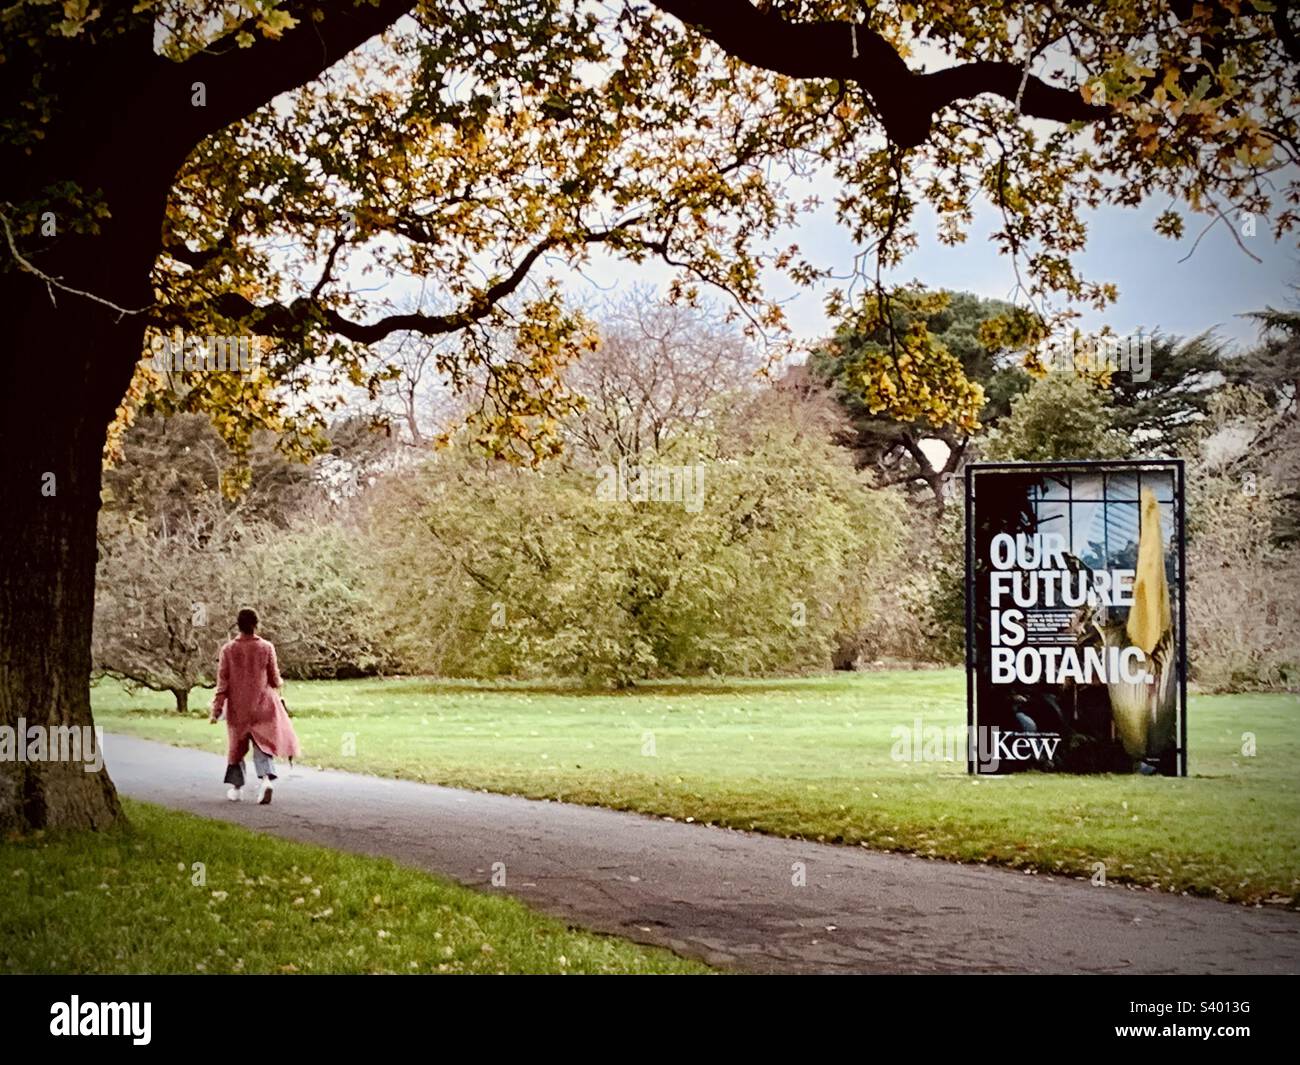 Dame portant un long manteau rose traversant les jardins botaniques royaux de Kew avec un panneau indiquant « notre avenir est botanique » Banque D'Images